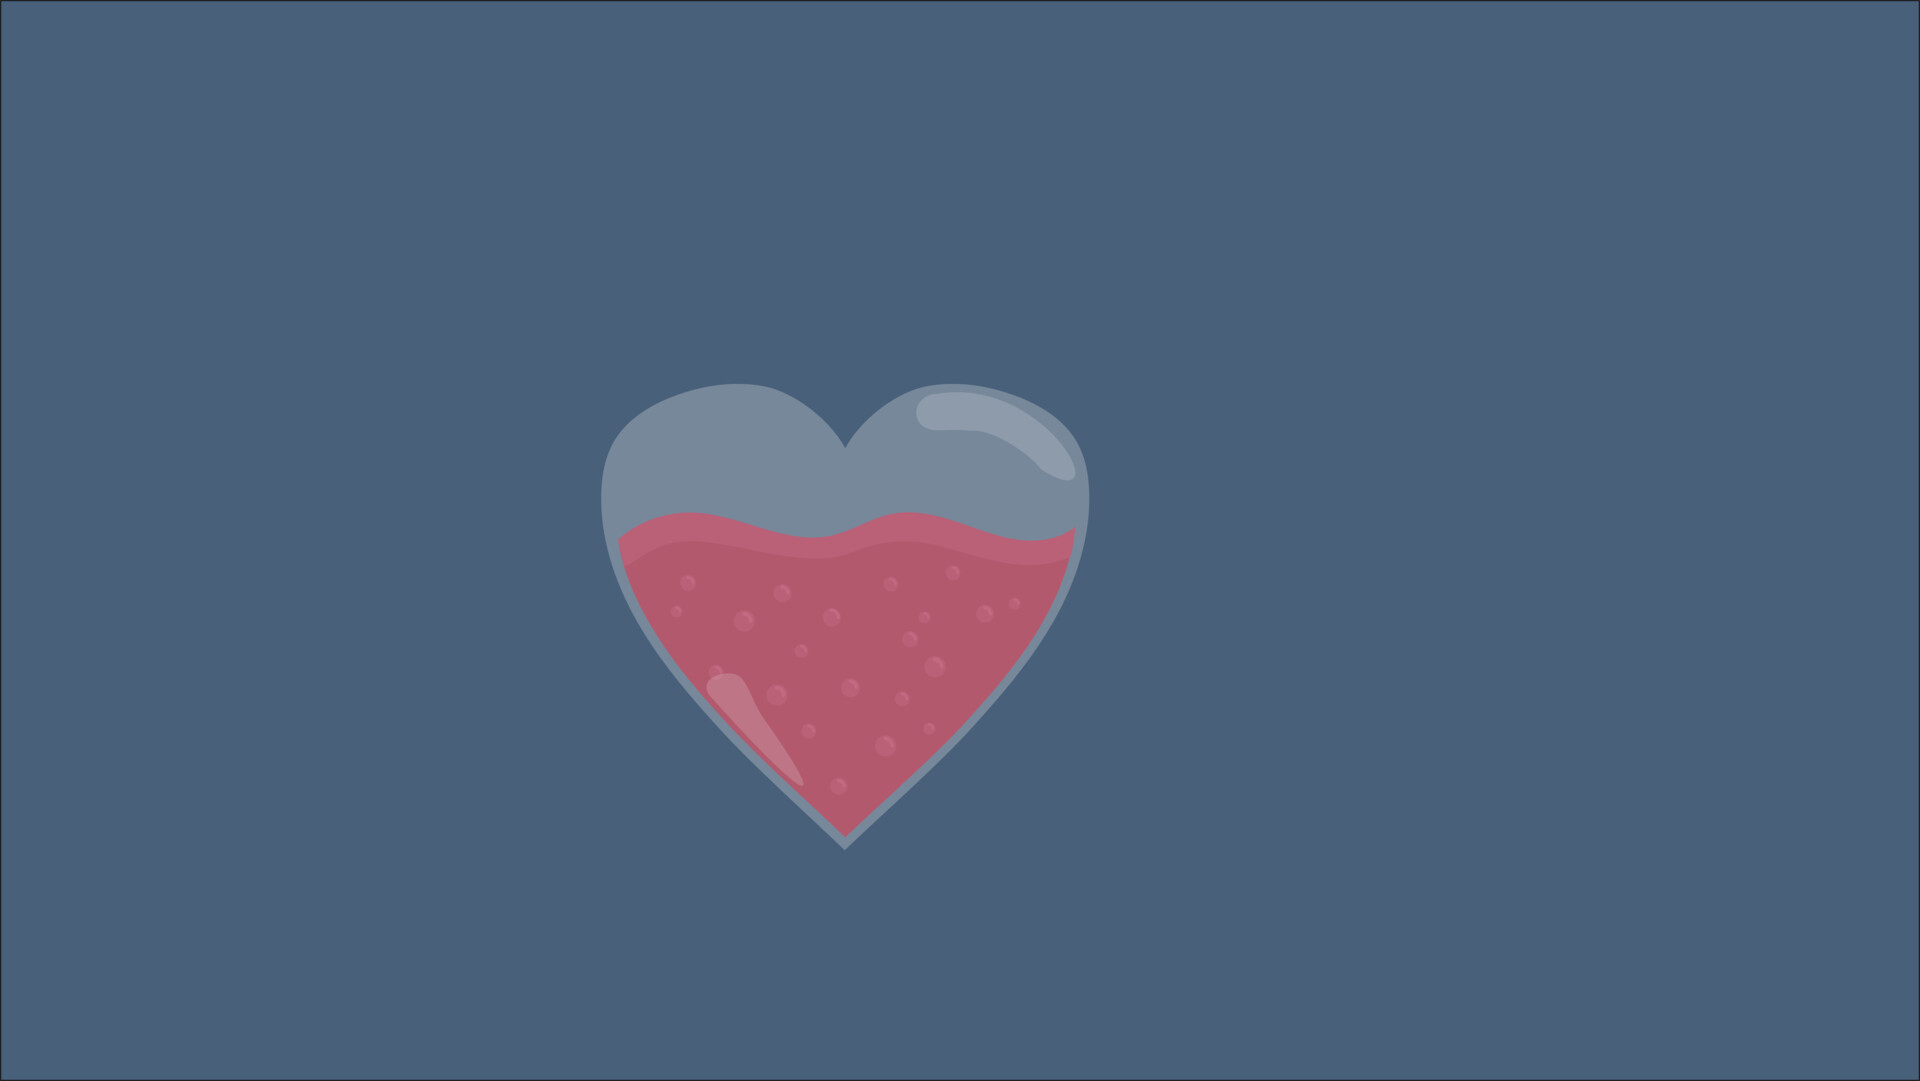 Heart Animation by Qianxu Zeng on Dribbble